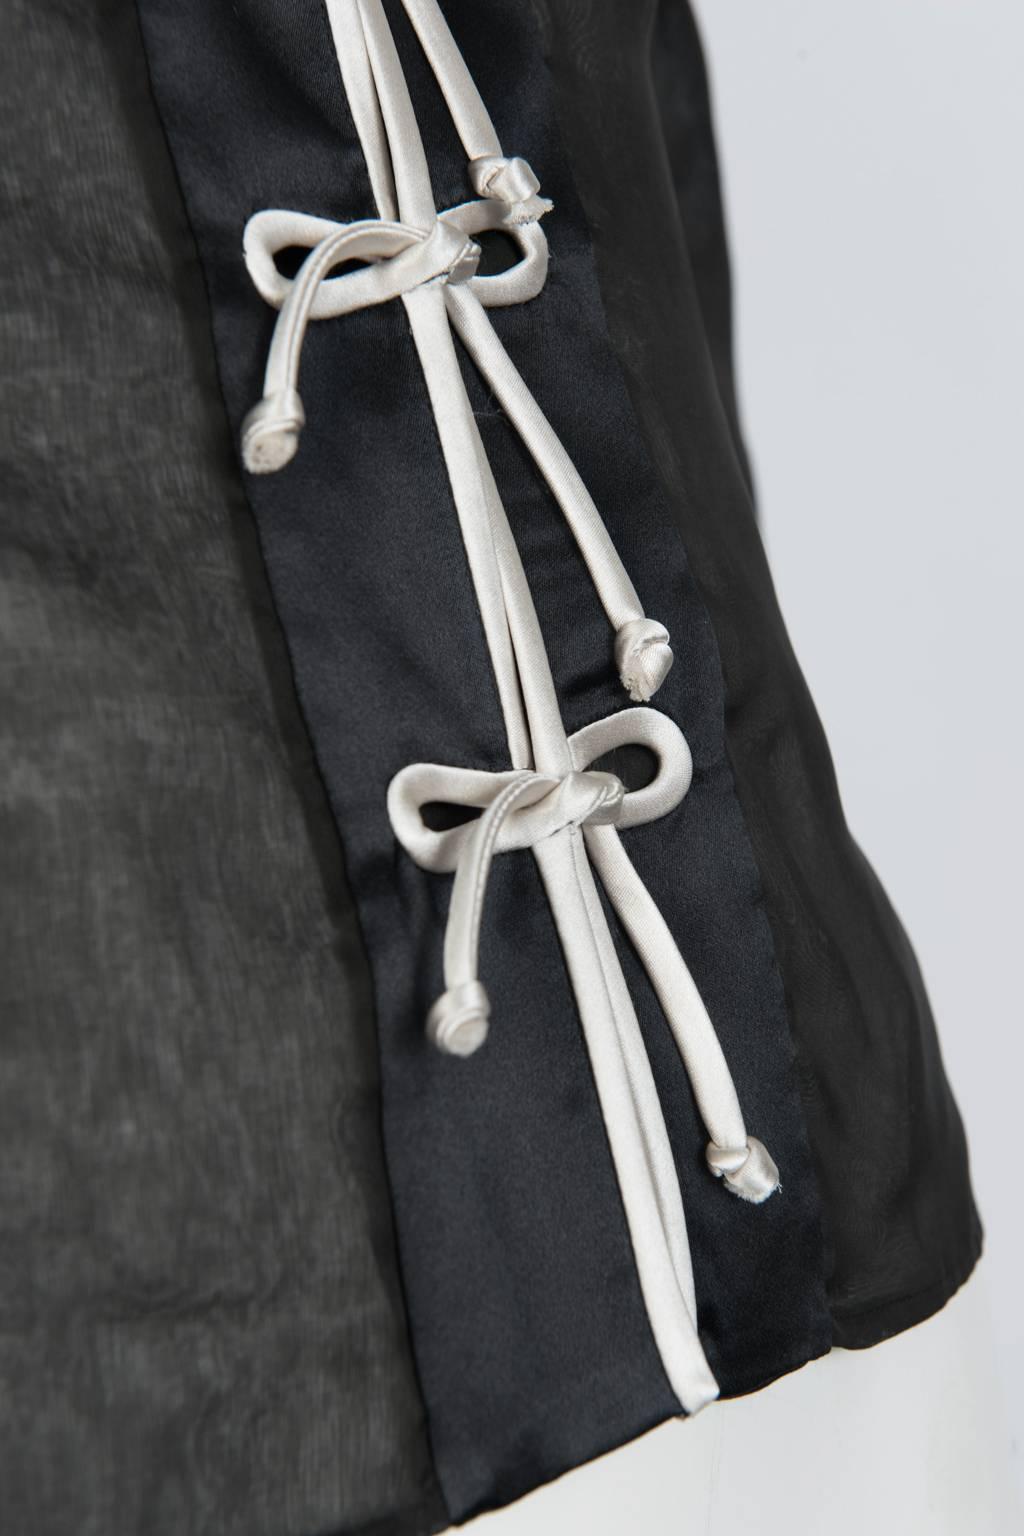 Yves Saint Laurent Silk Victorian Inspired Blouse 1